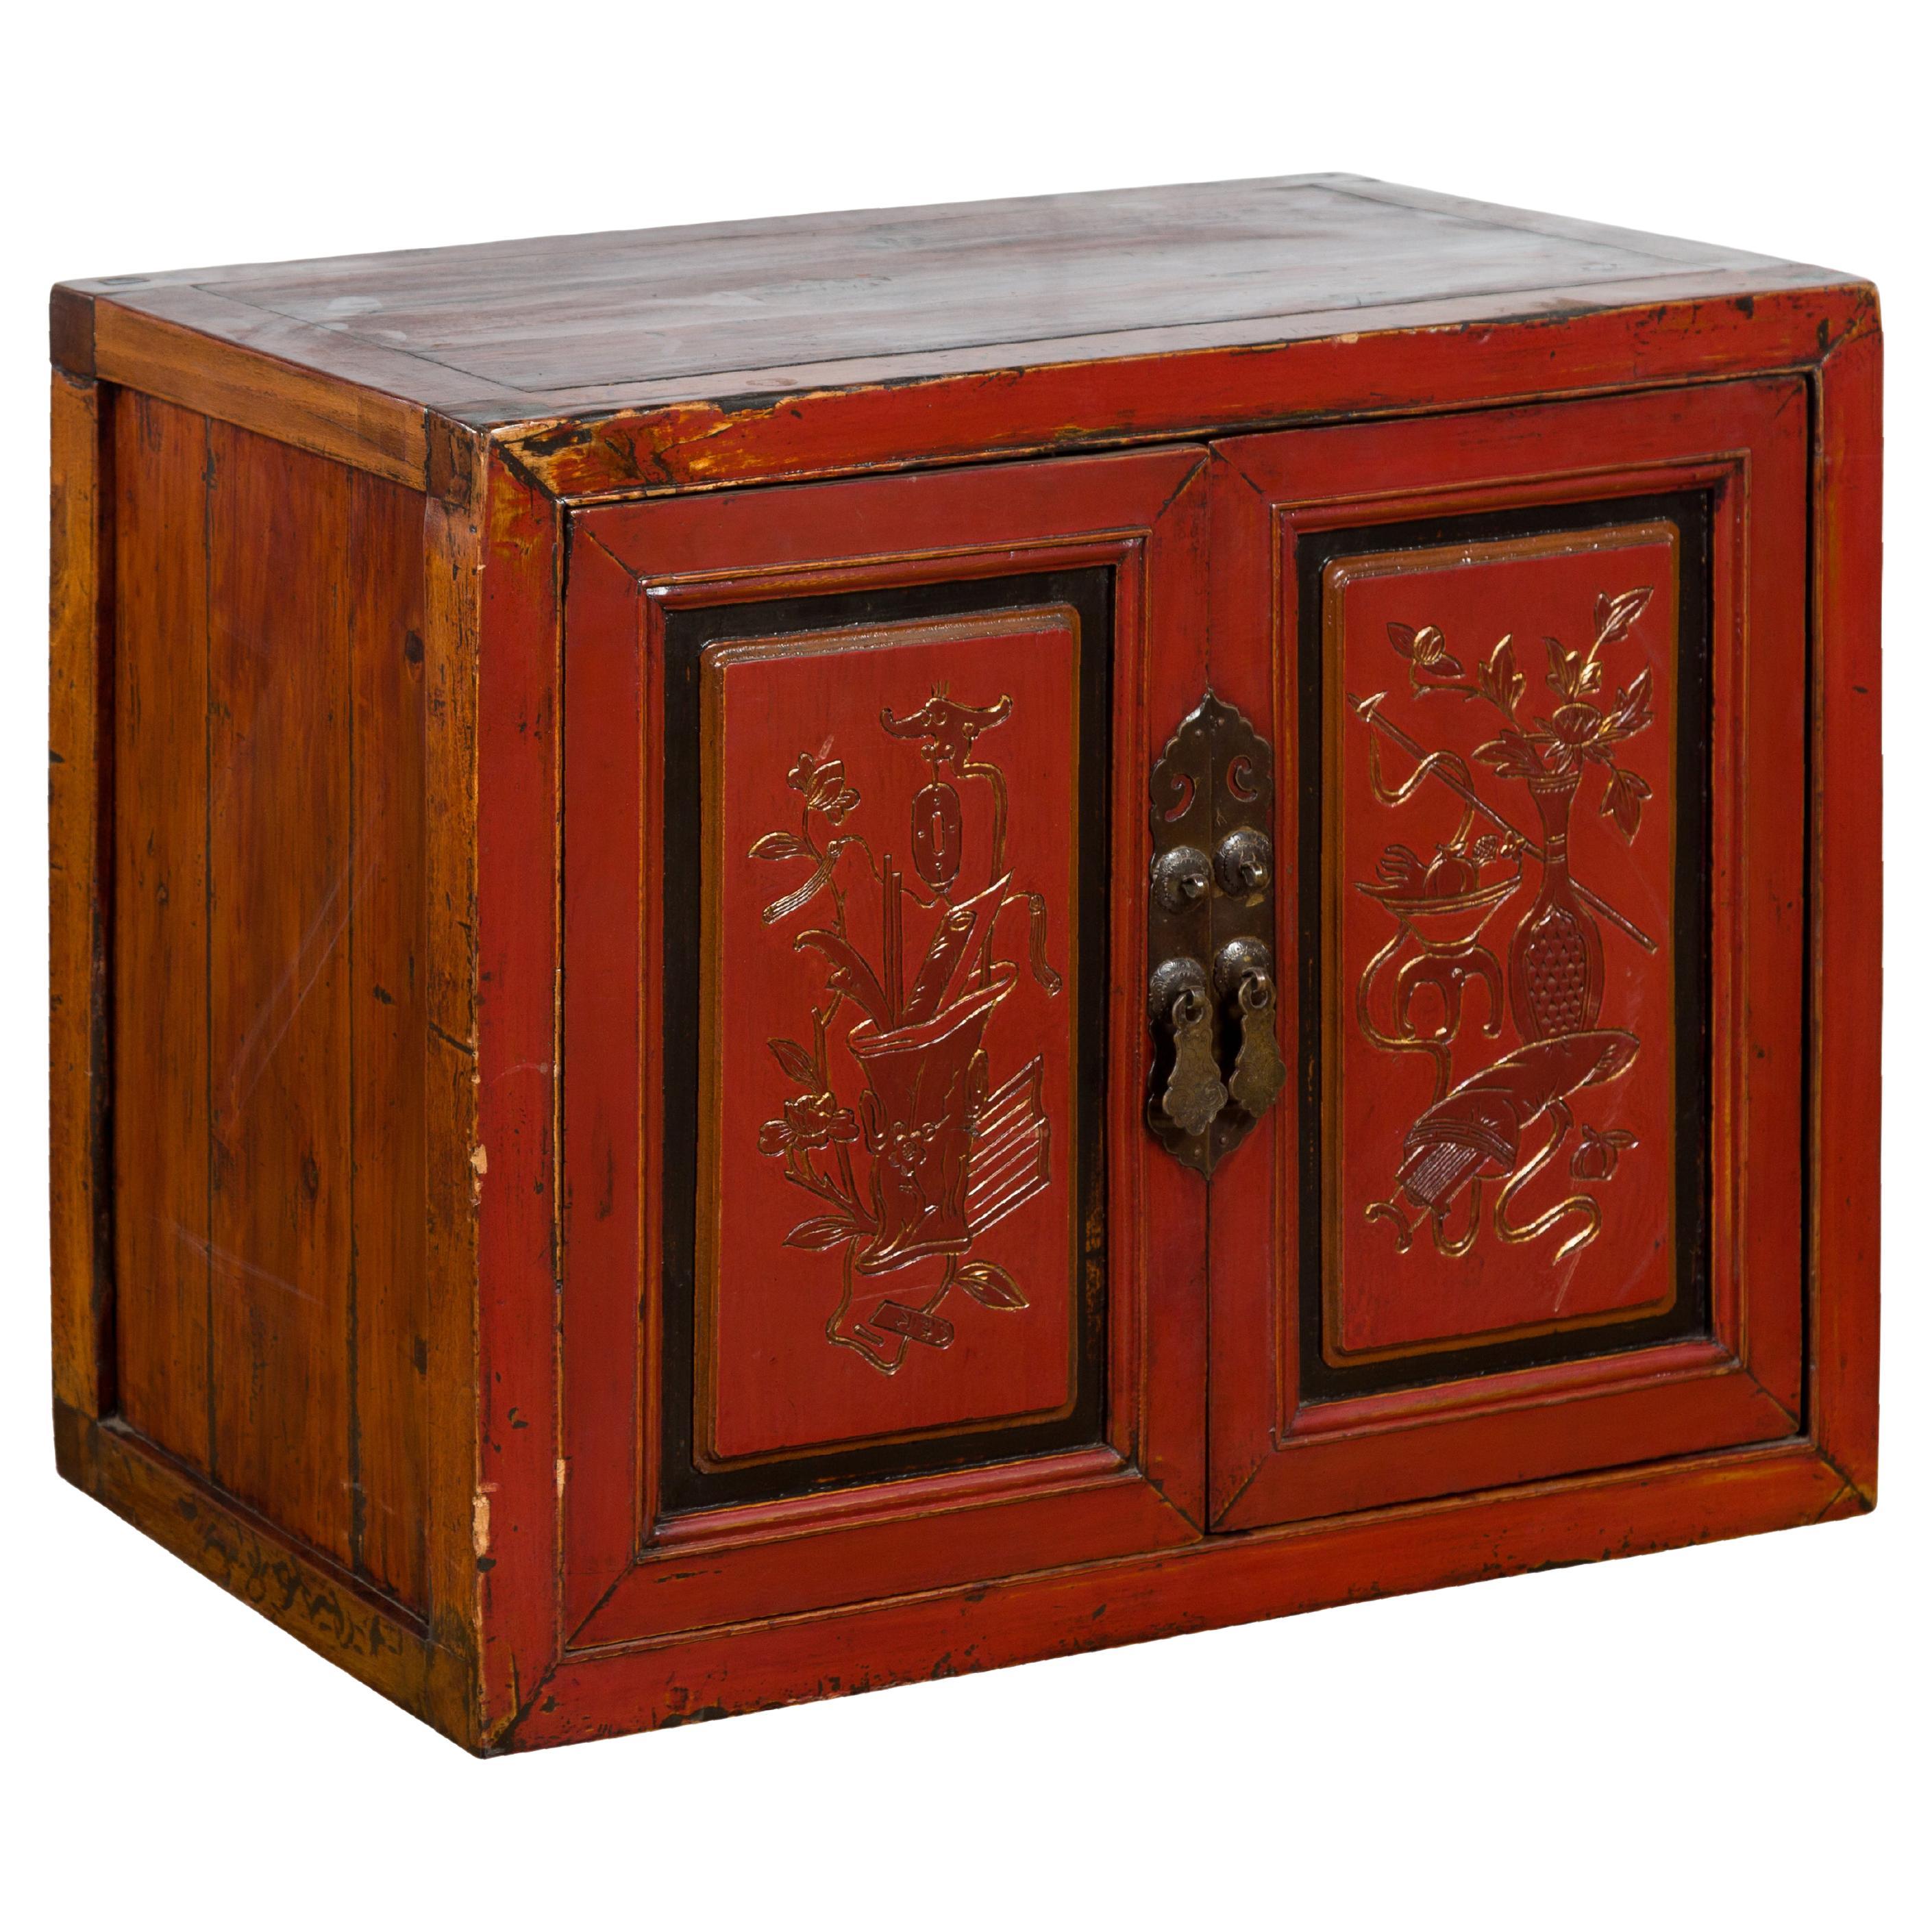 Cabinet en laque rouge de la dynastie chinoise Qing du XIXe siècle avec portes sculptées à la main